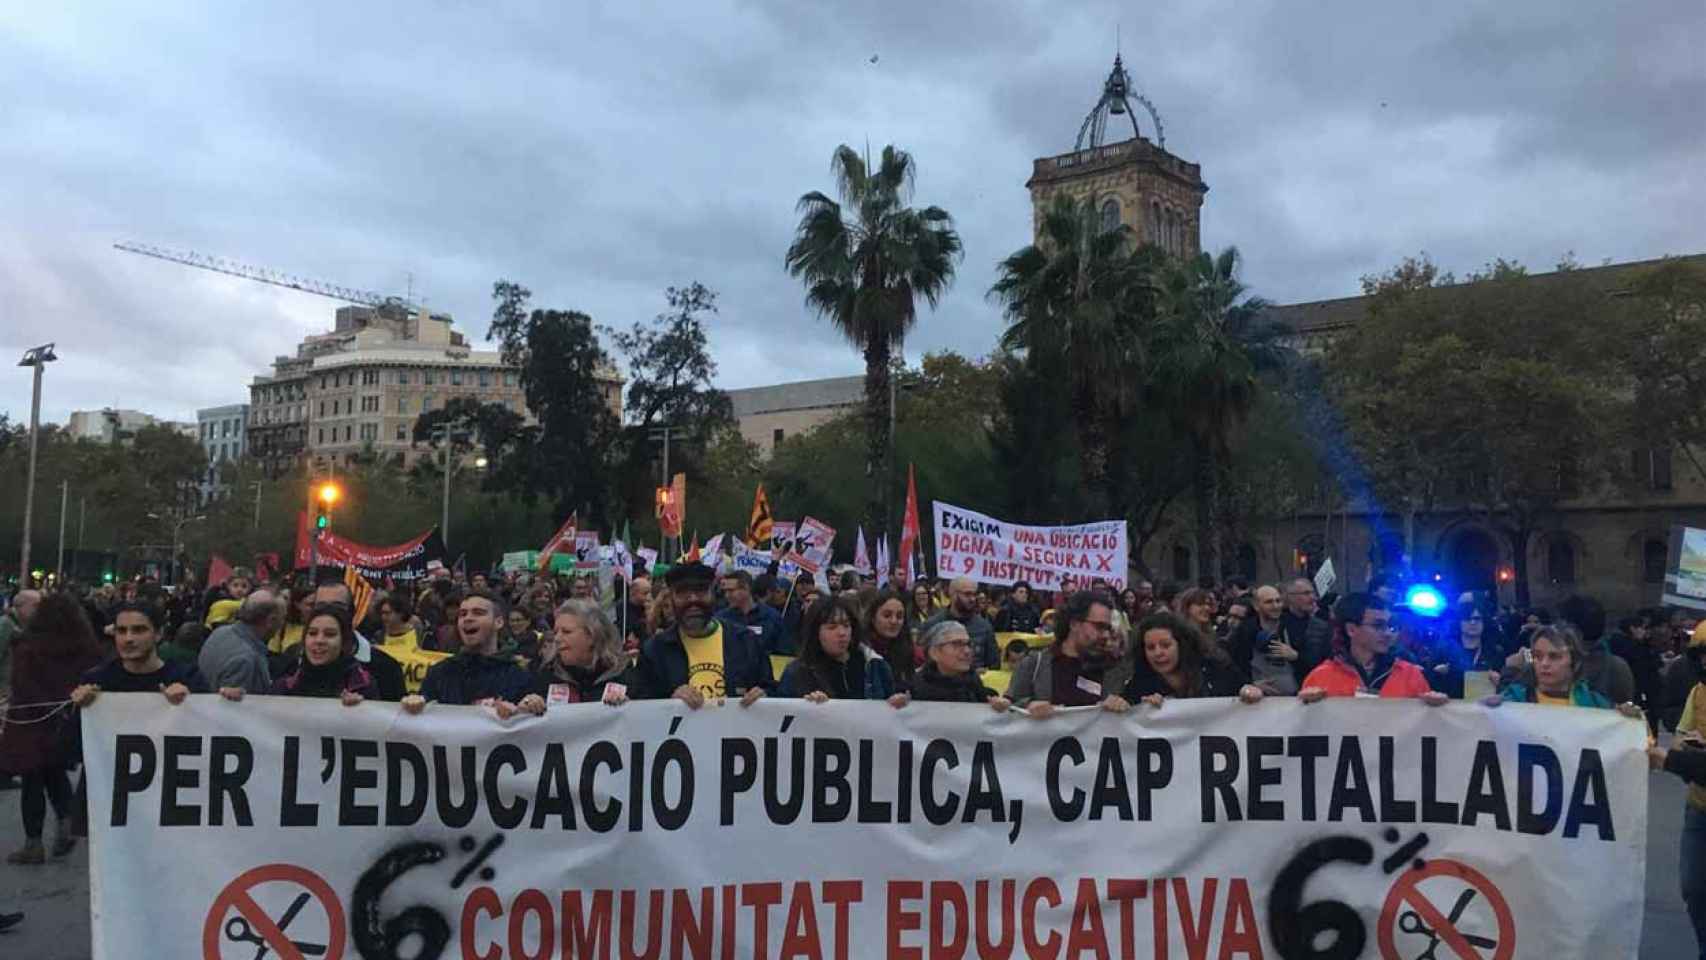 La manifestación ha partido de la plaza Universitat / EP